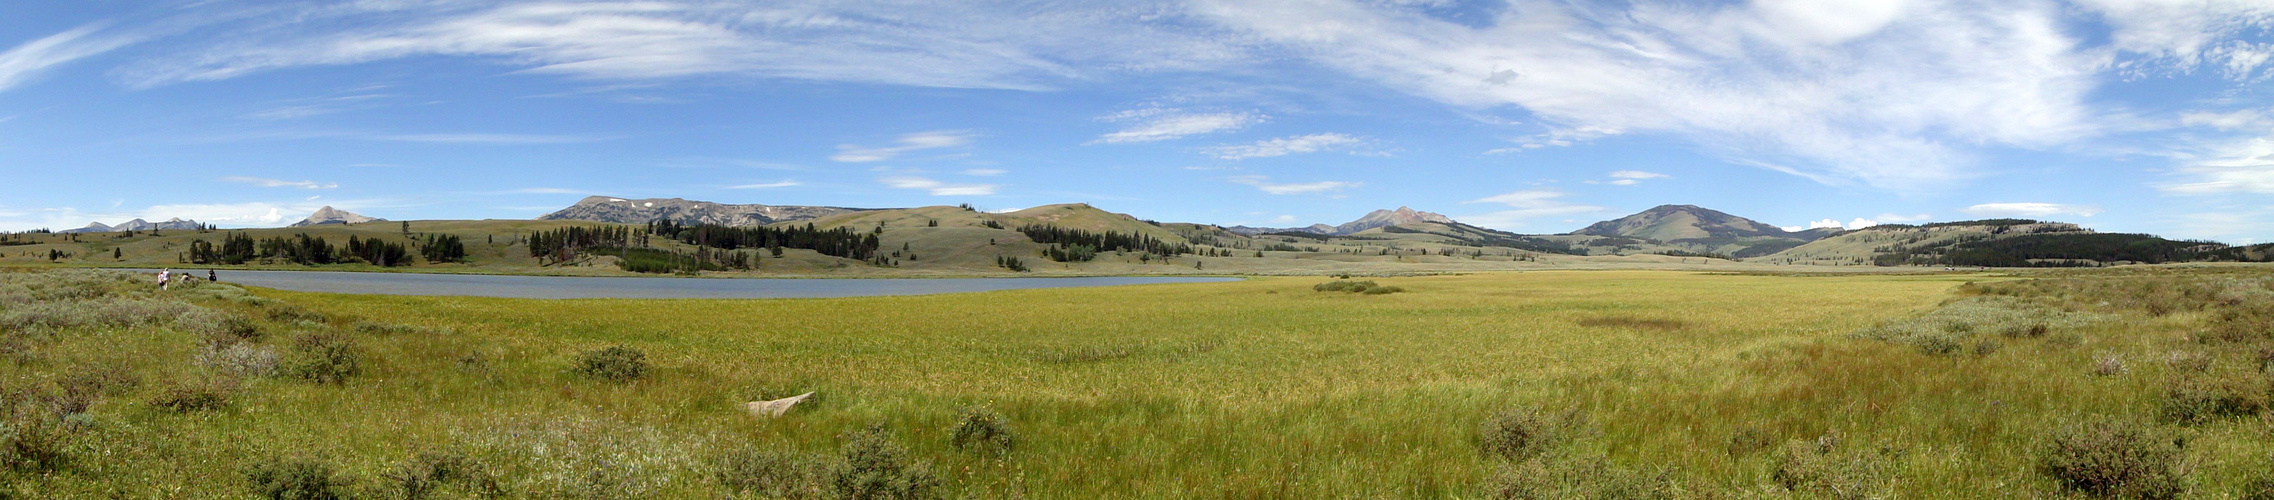 Yellowstone NP und seine Grösse